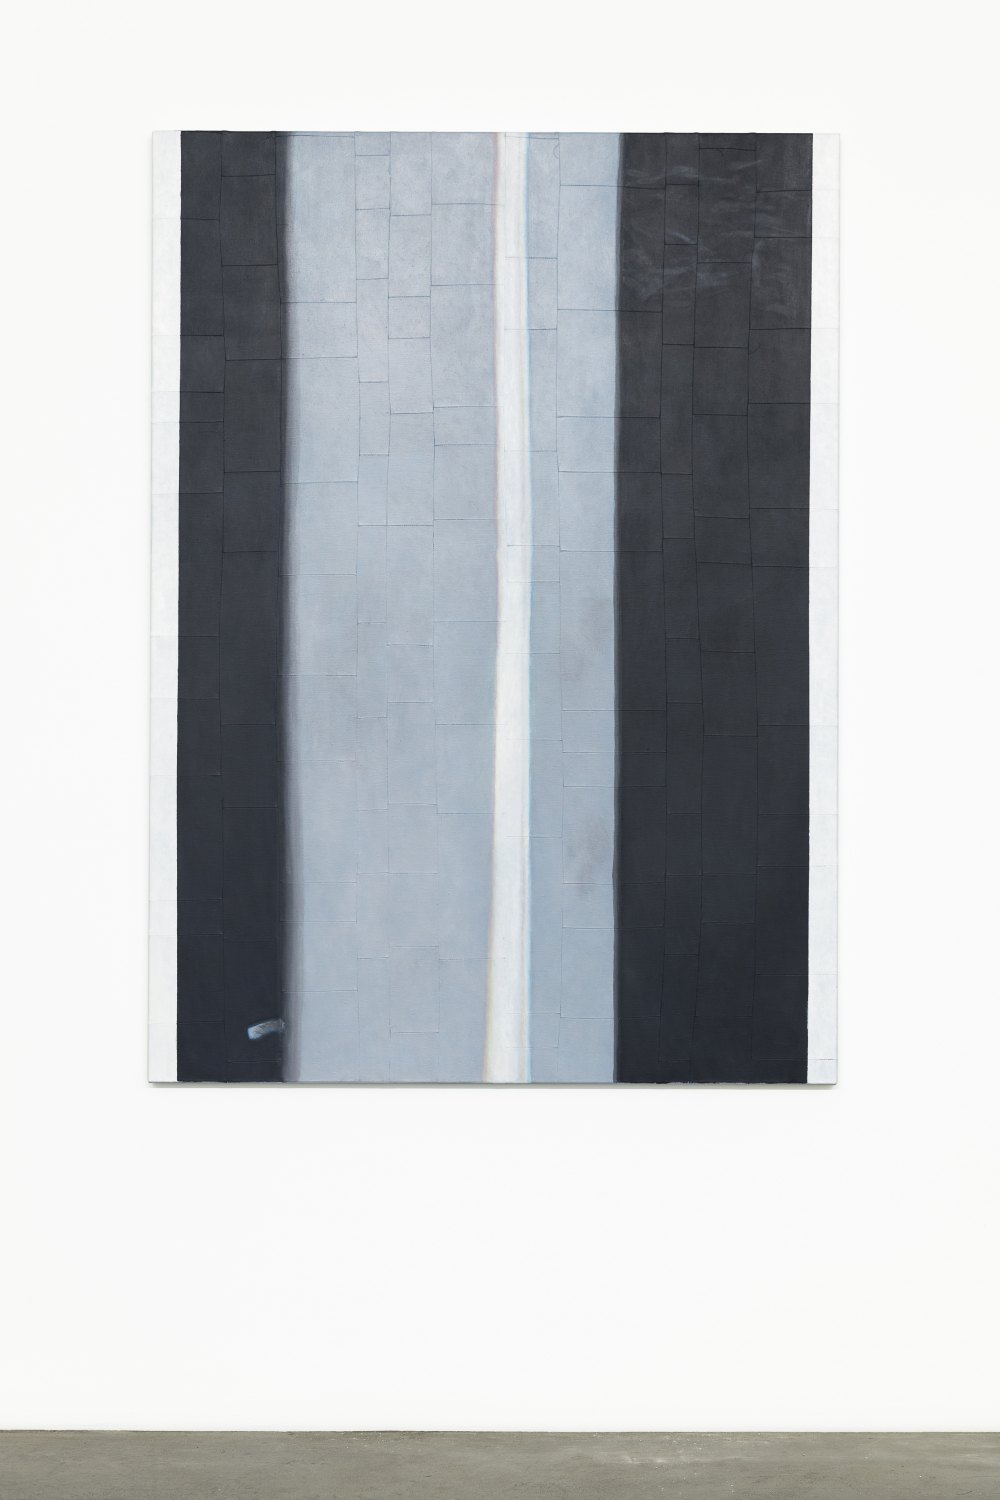 Sergej Jensen  De schijn van en lijn, 2020 Oil on sewn linen, 180 x 130 x 3 cm